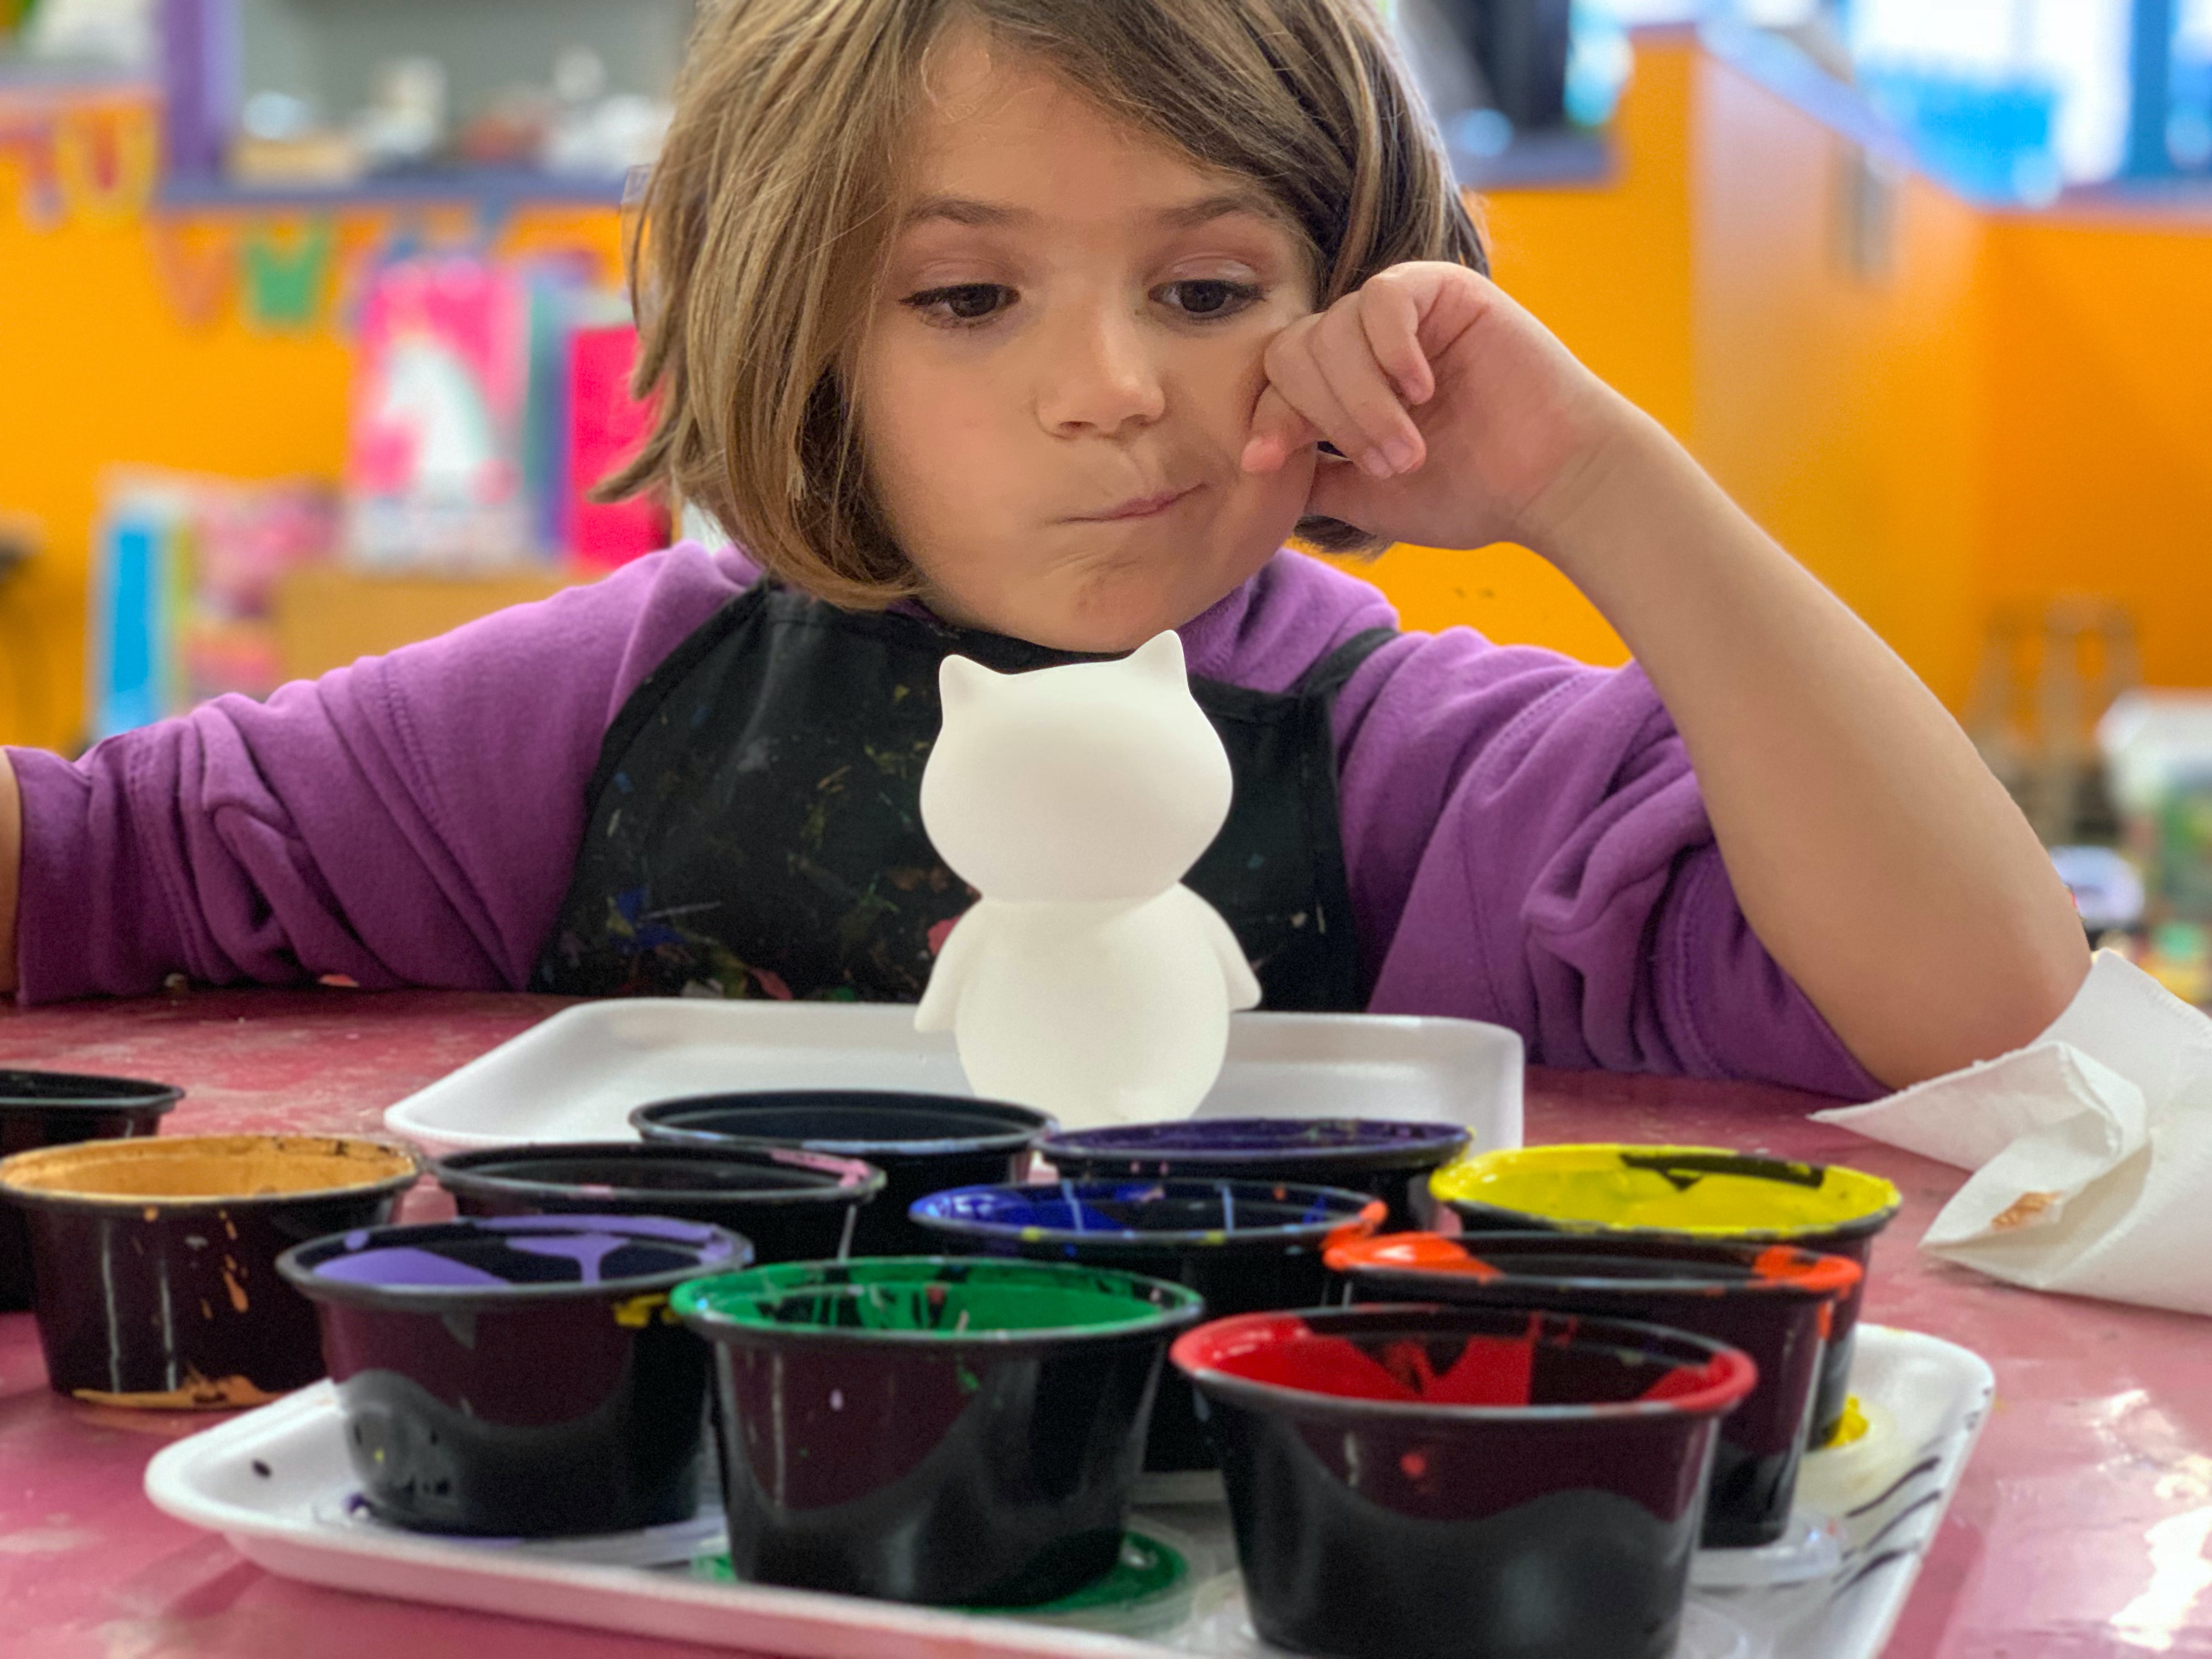 Foto: Ein Kind sitzt vor bunten Farbtöpfen und möchte malen.